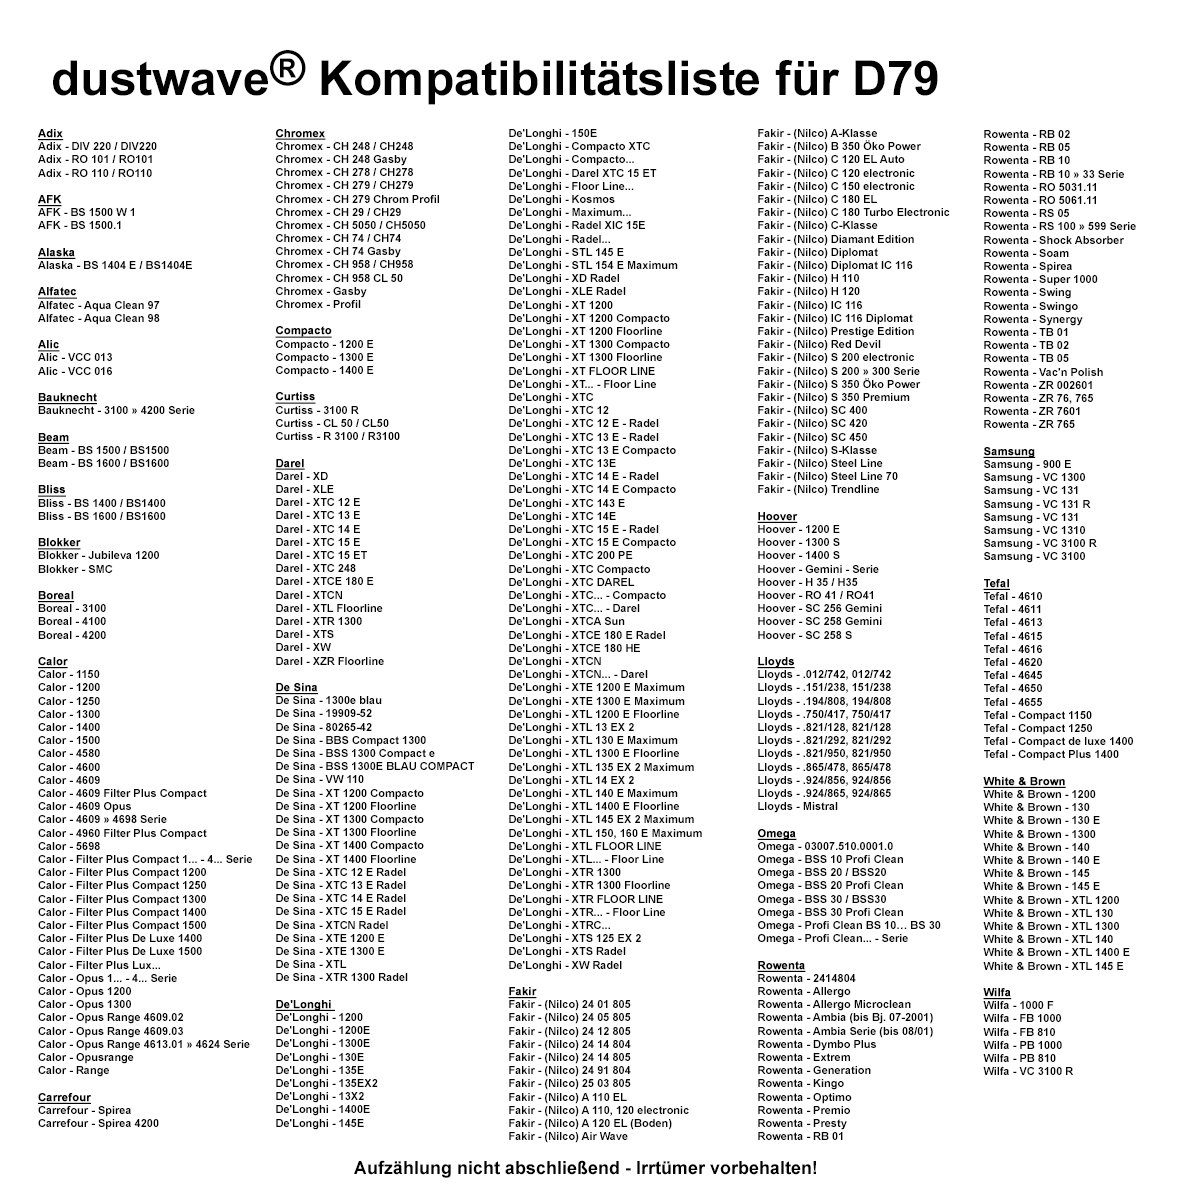 DIV Staubsaugerbeutel (ca. - Adix 220 + / Adix 20 Megapack, Staubsaugerbeutel 2 - 20 DIV220 DIV Dustwave 220 Megapack, 15x15cm DIV220, zuschneidbar) für St., Standard / Hepa-Filter passend